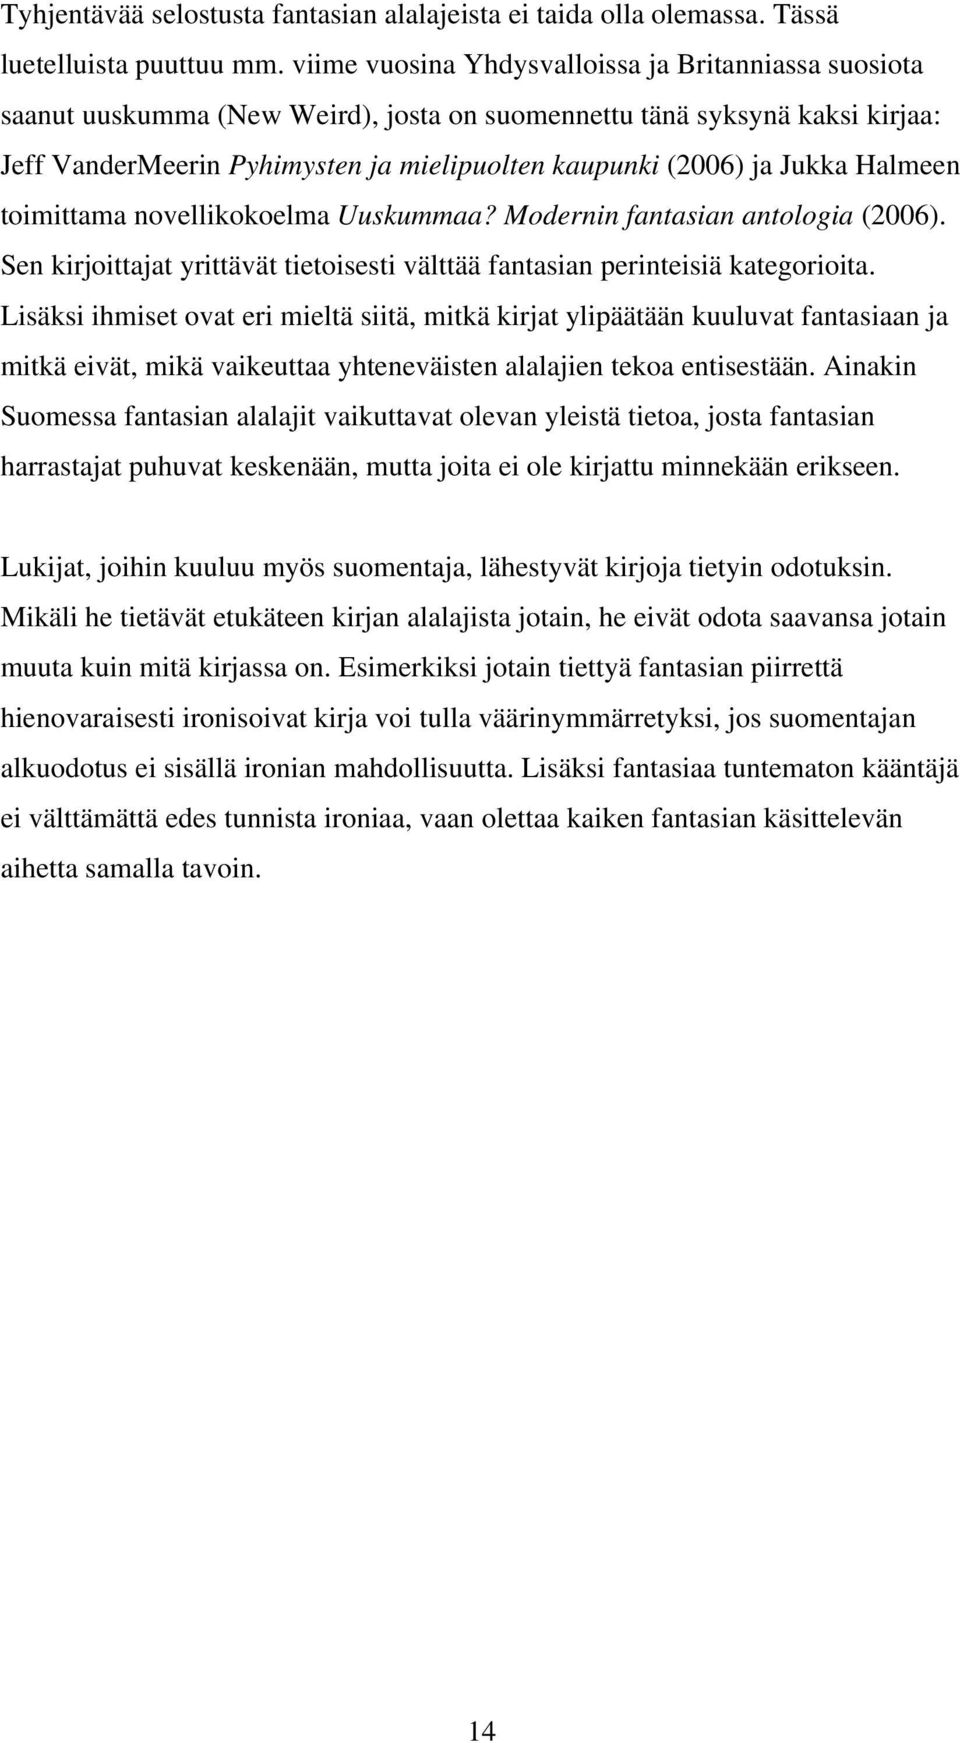 Jukka Halmeen toimittama novellikokoelma Uuskummaa? Modernin fantasian antologia (2006). Sen kirjoittajat yrittävät tietoisesti välttää fantasian perinteisiä kategorioita.